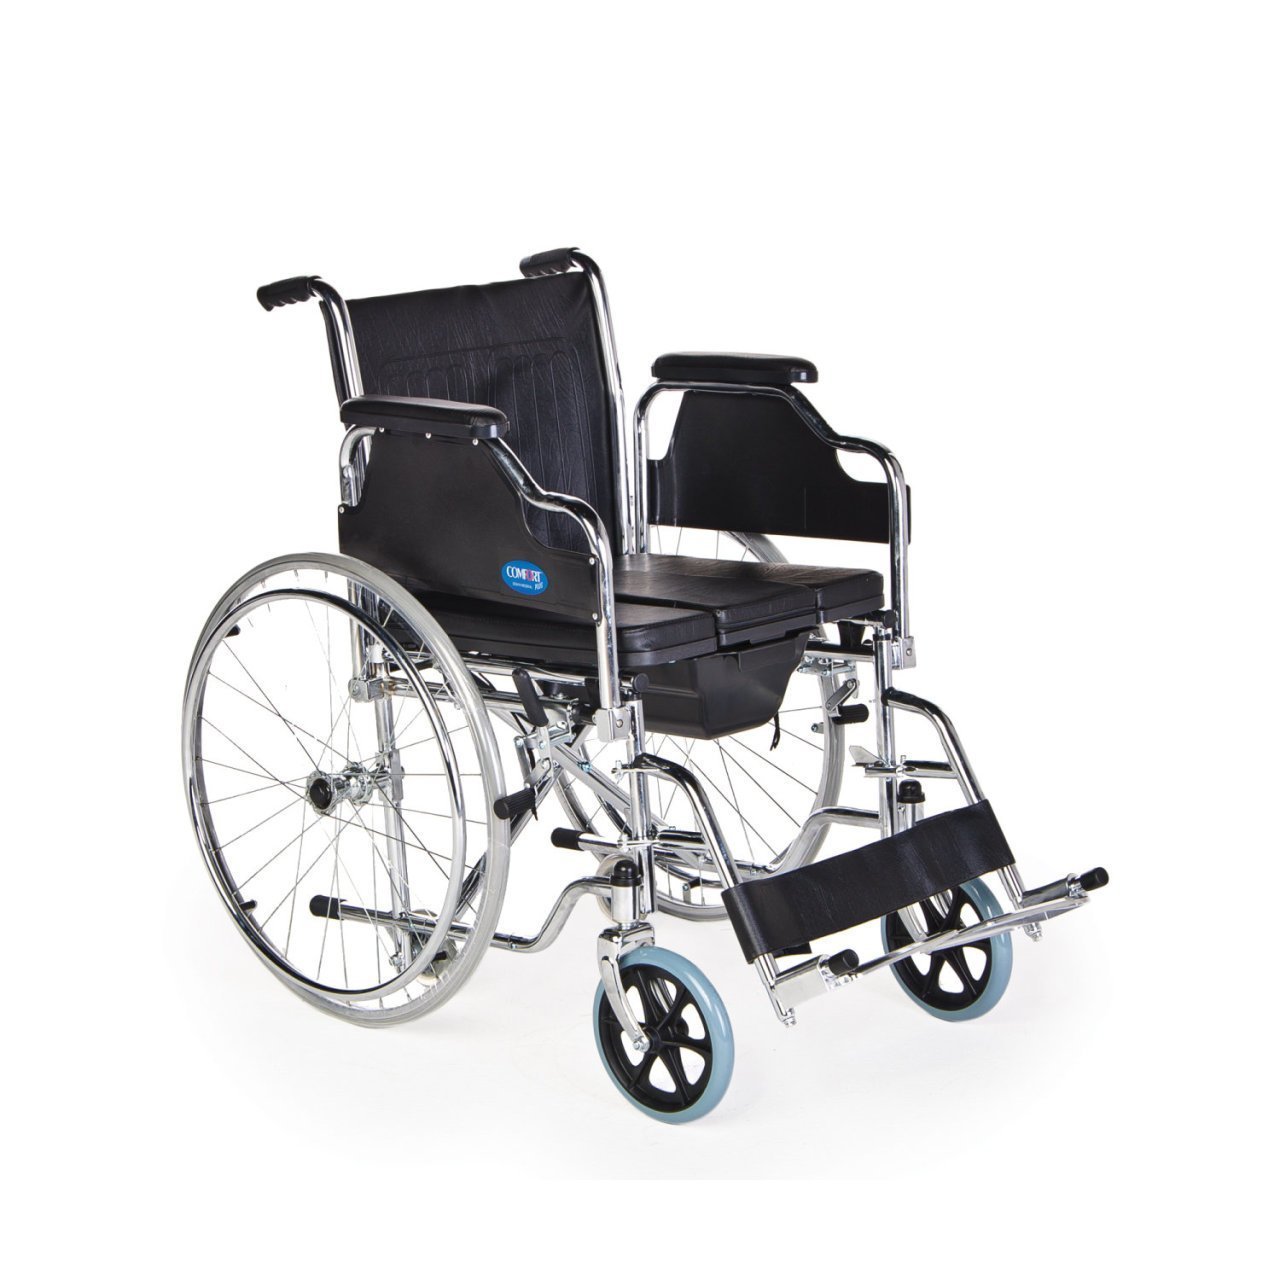 Hasta Wc Tuvaletli Katlanabilir Tekerlekli Sandalye